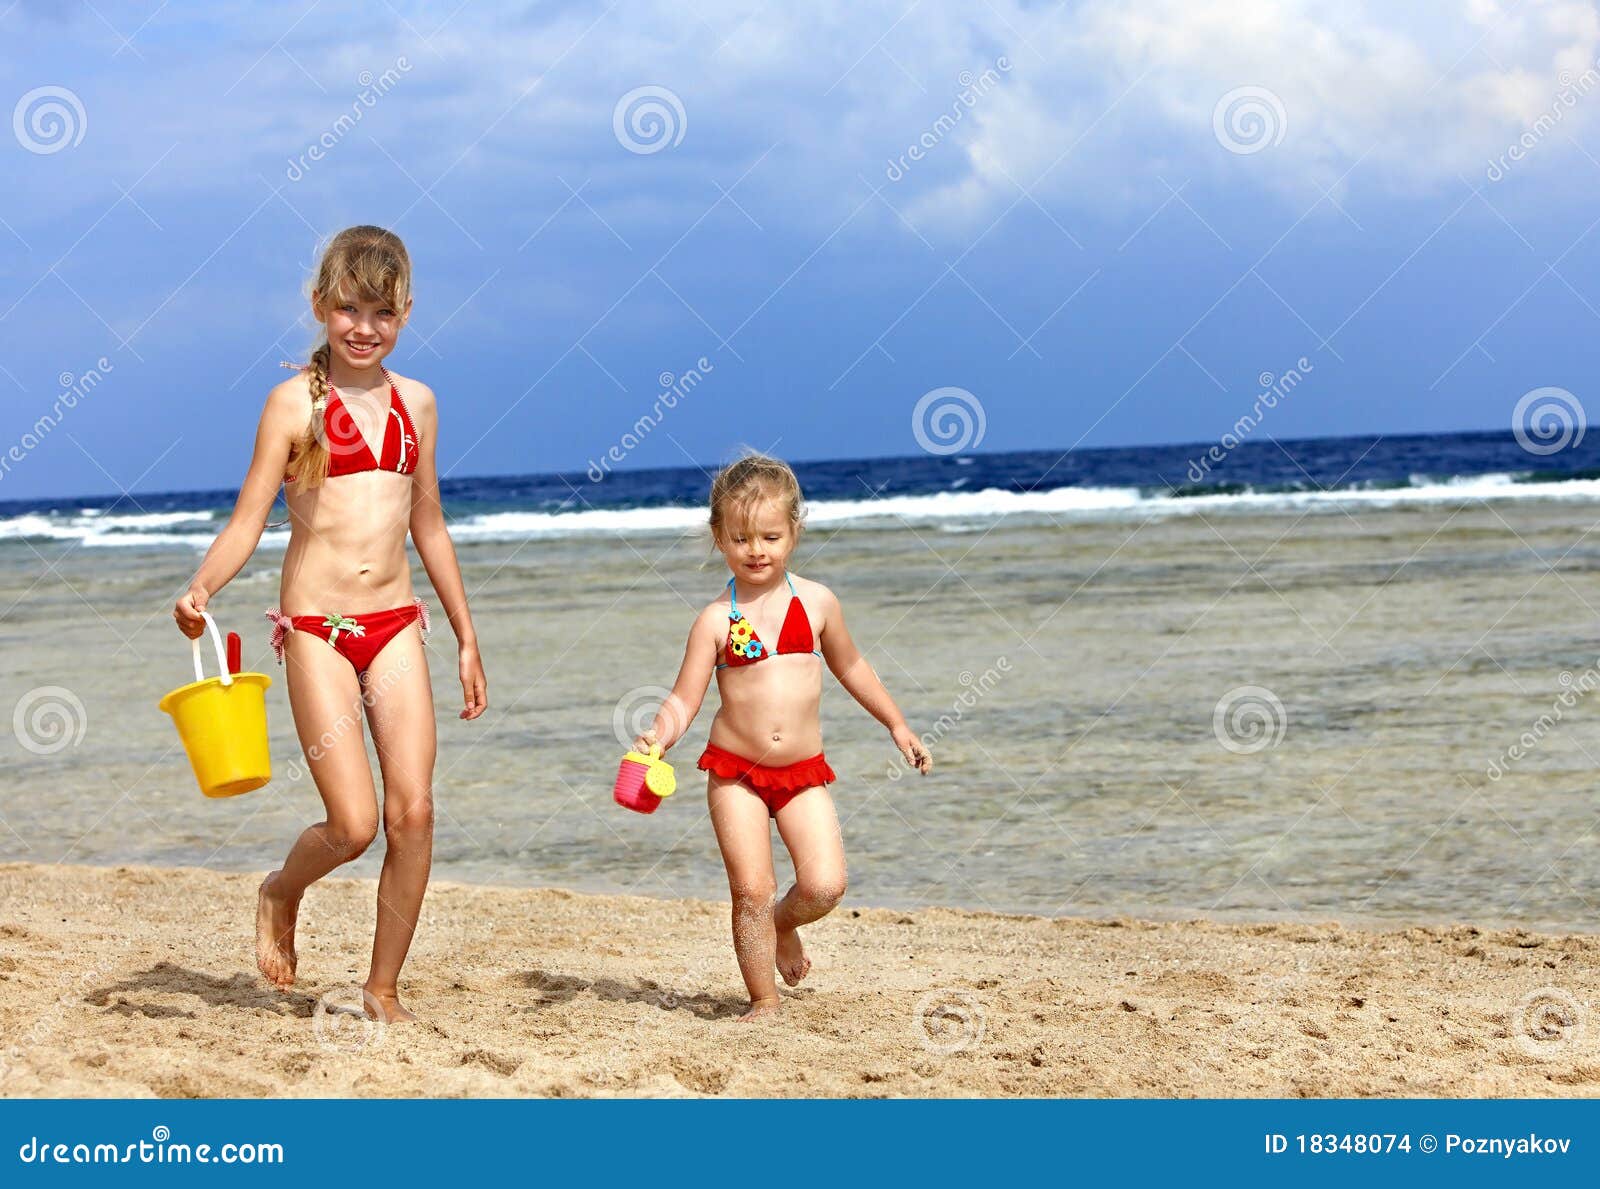 фото дети на голом пляже фото 6